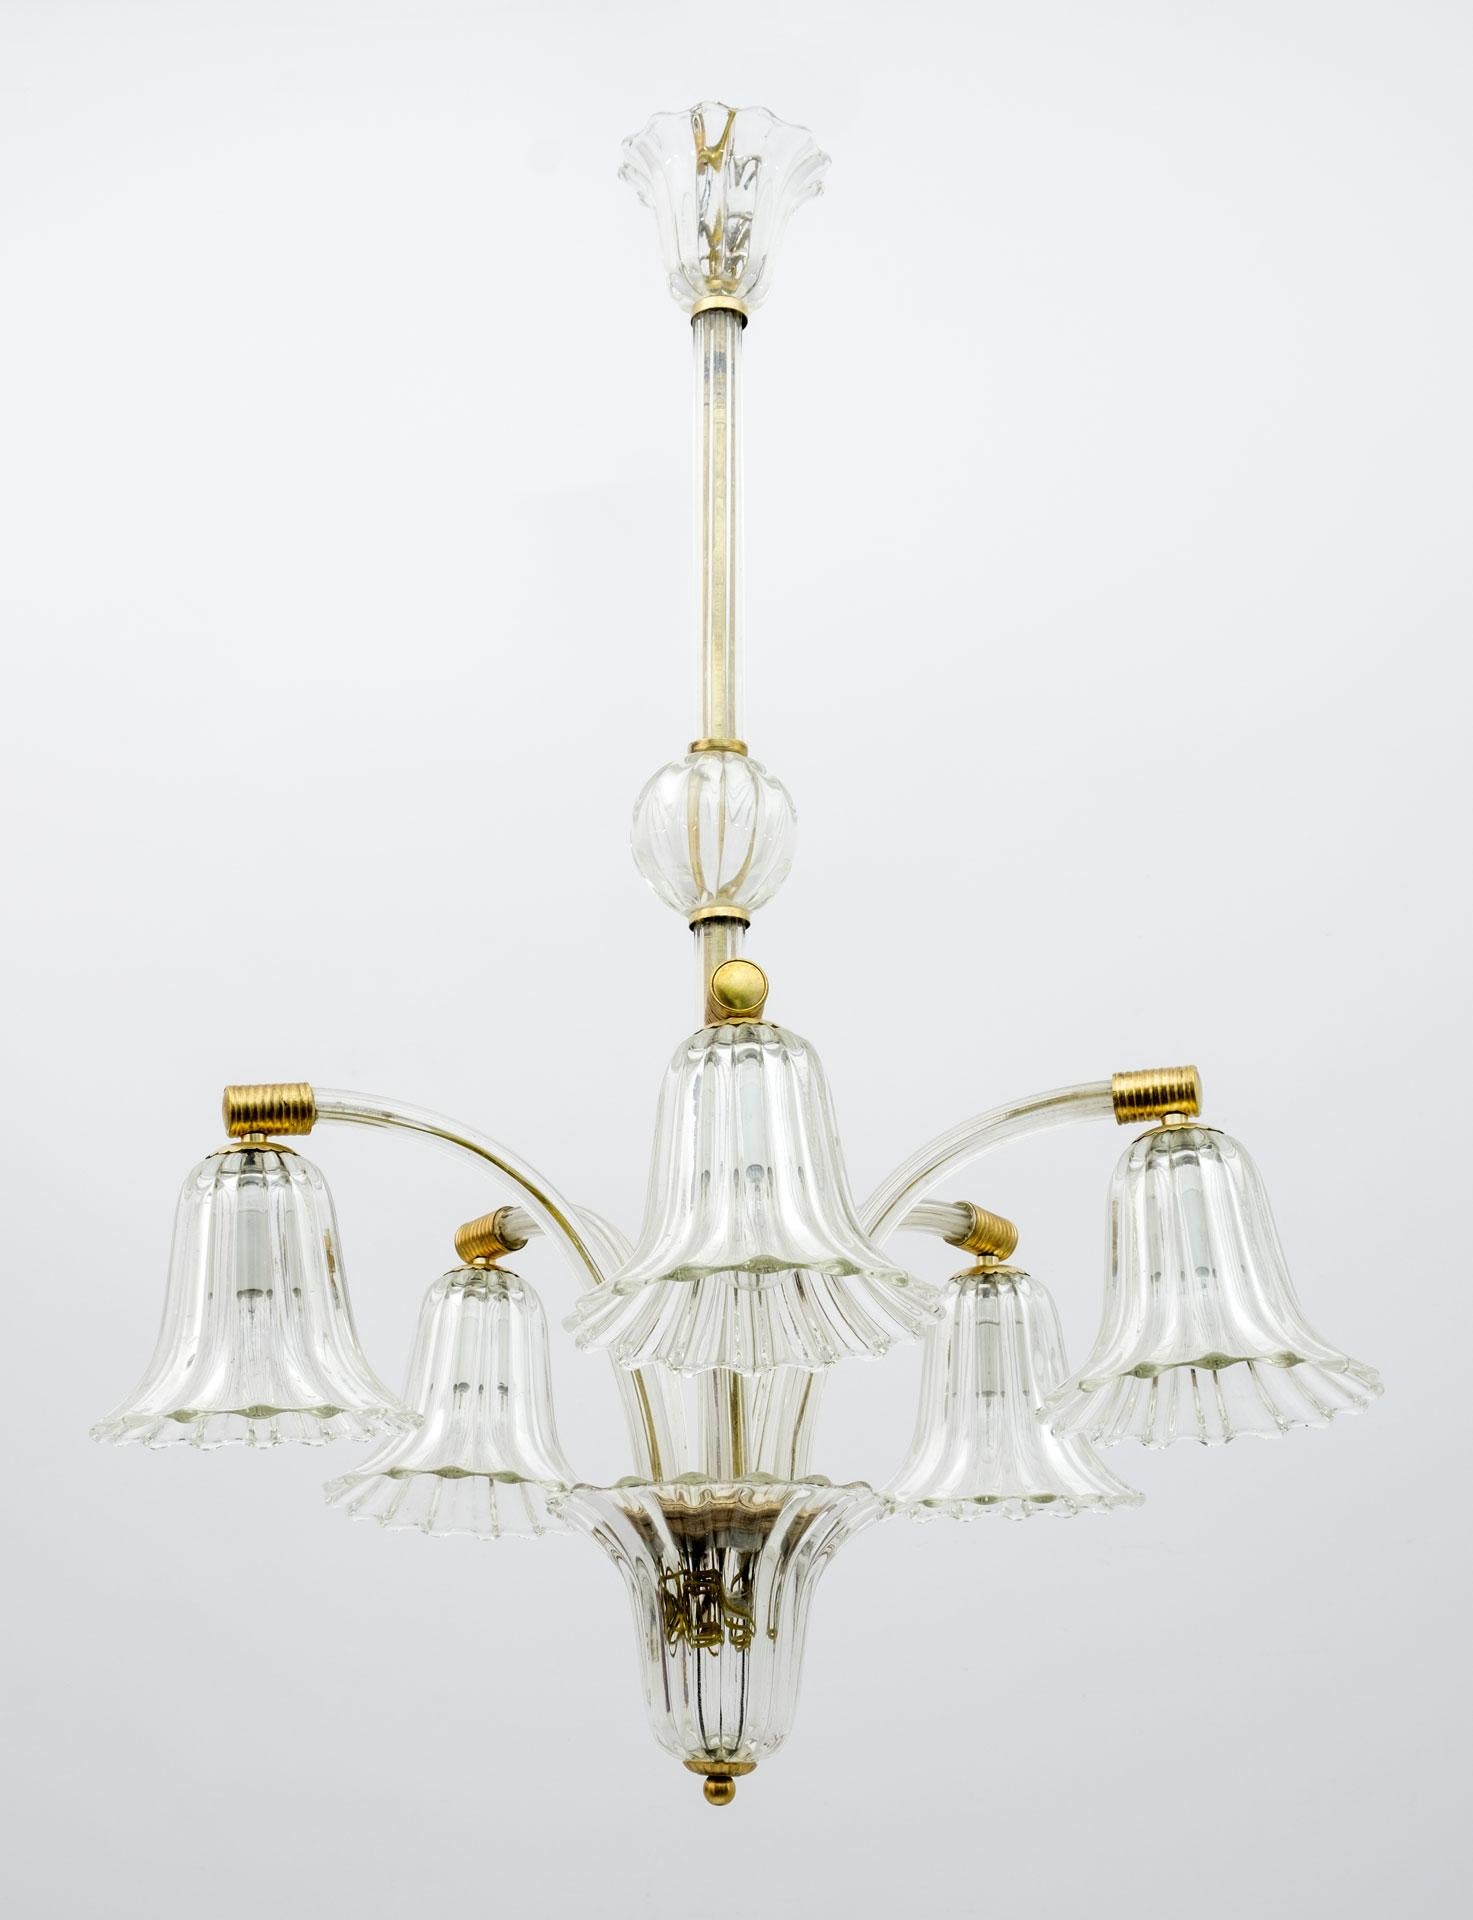 Ce lustre à cinq lumières a été conçu et produit par Ercole Barovier dans les années 1940. Il est fabriqué en verre de Murano et en laiton.
Entièrement nettoyée, polie et avec un nouveau système électrique, prête à meubler votre maison.

La verrerie